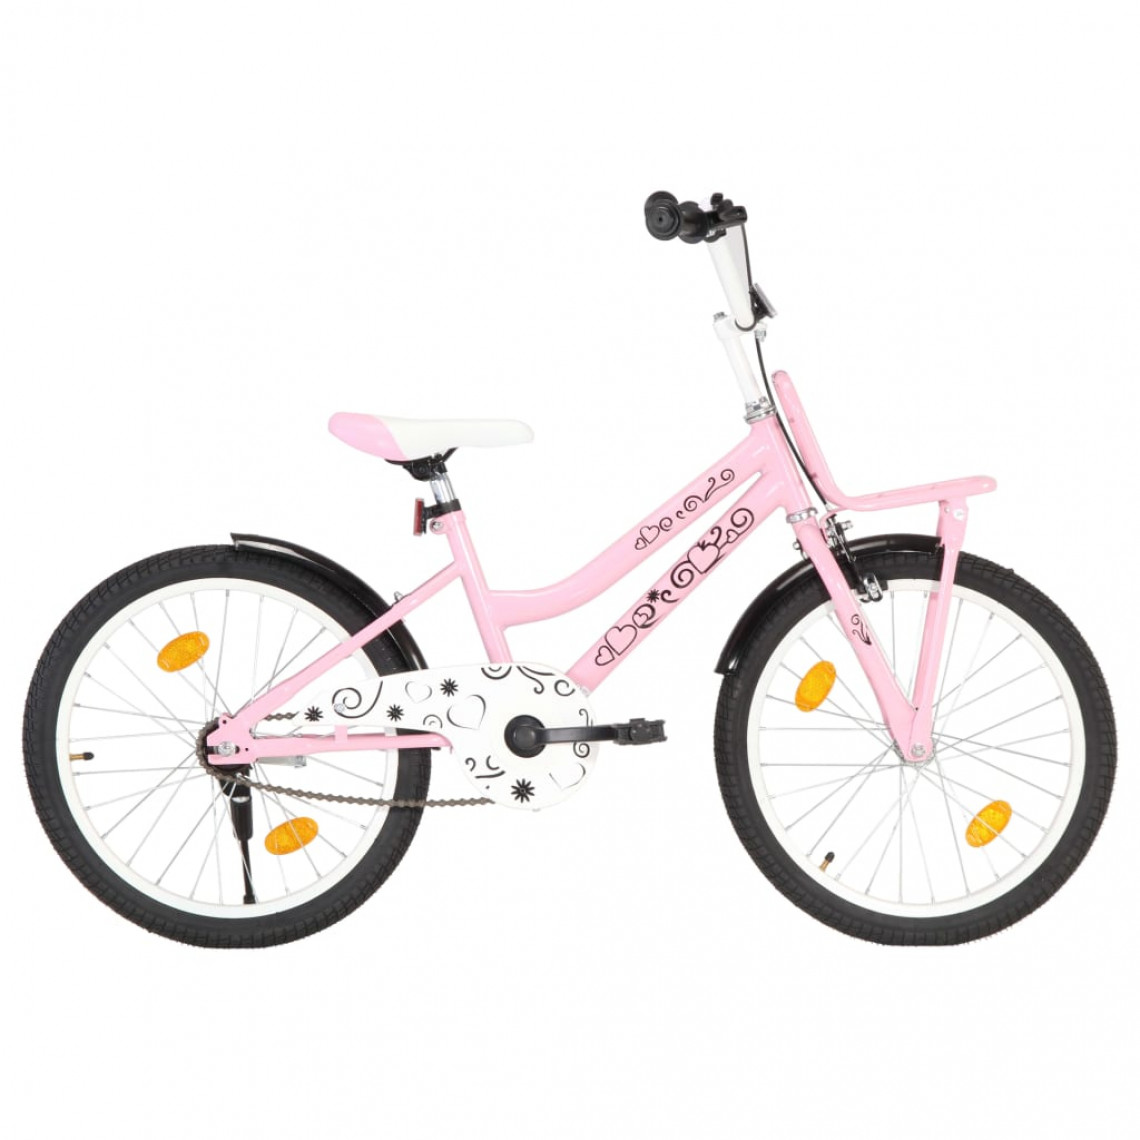 Icaverne - Icaverne - Vélos serie Vélo enfant avec porte-bagages avant 20 pouces Rose et noir - Vélo électrique